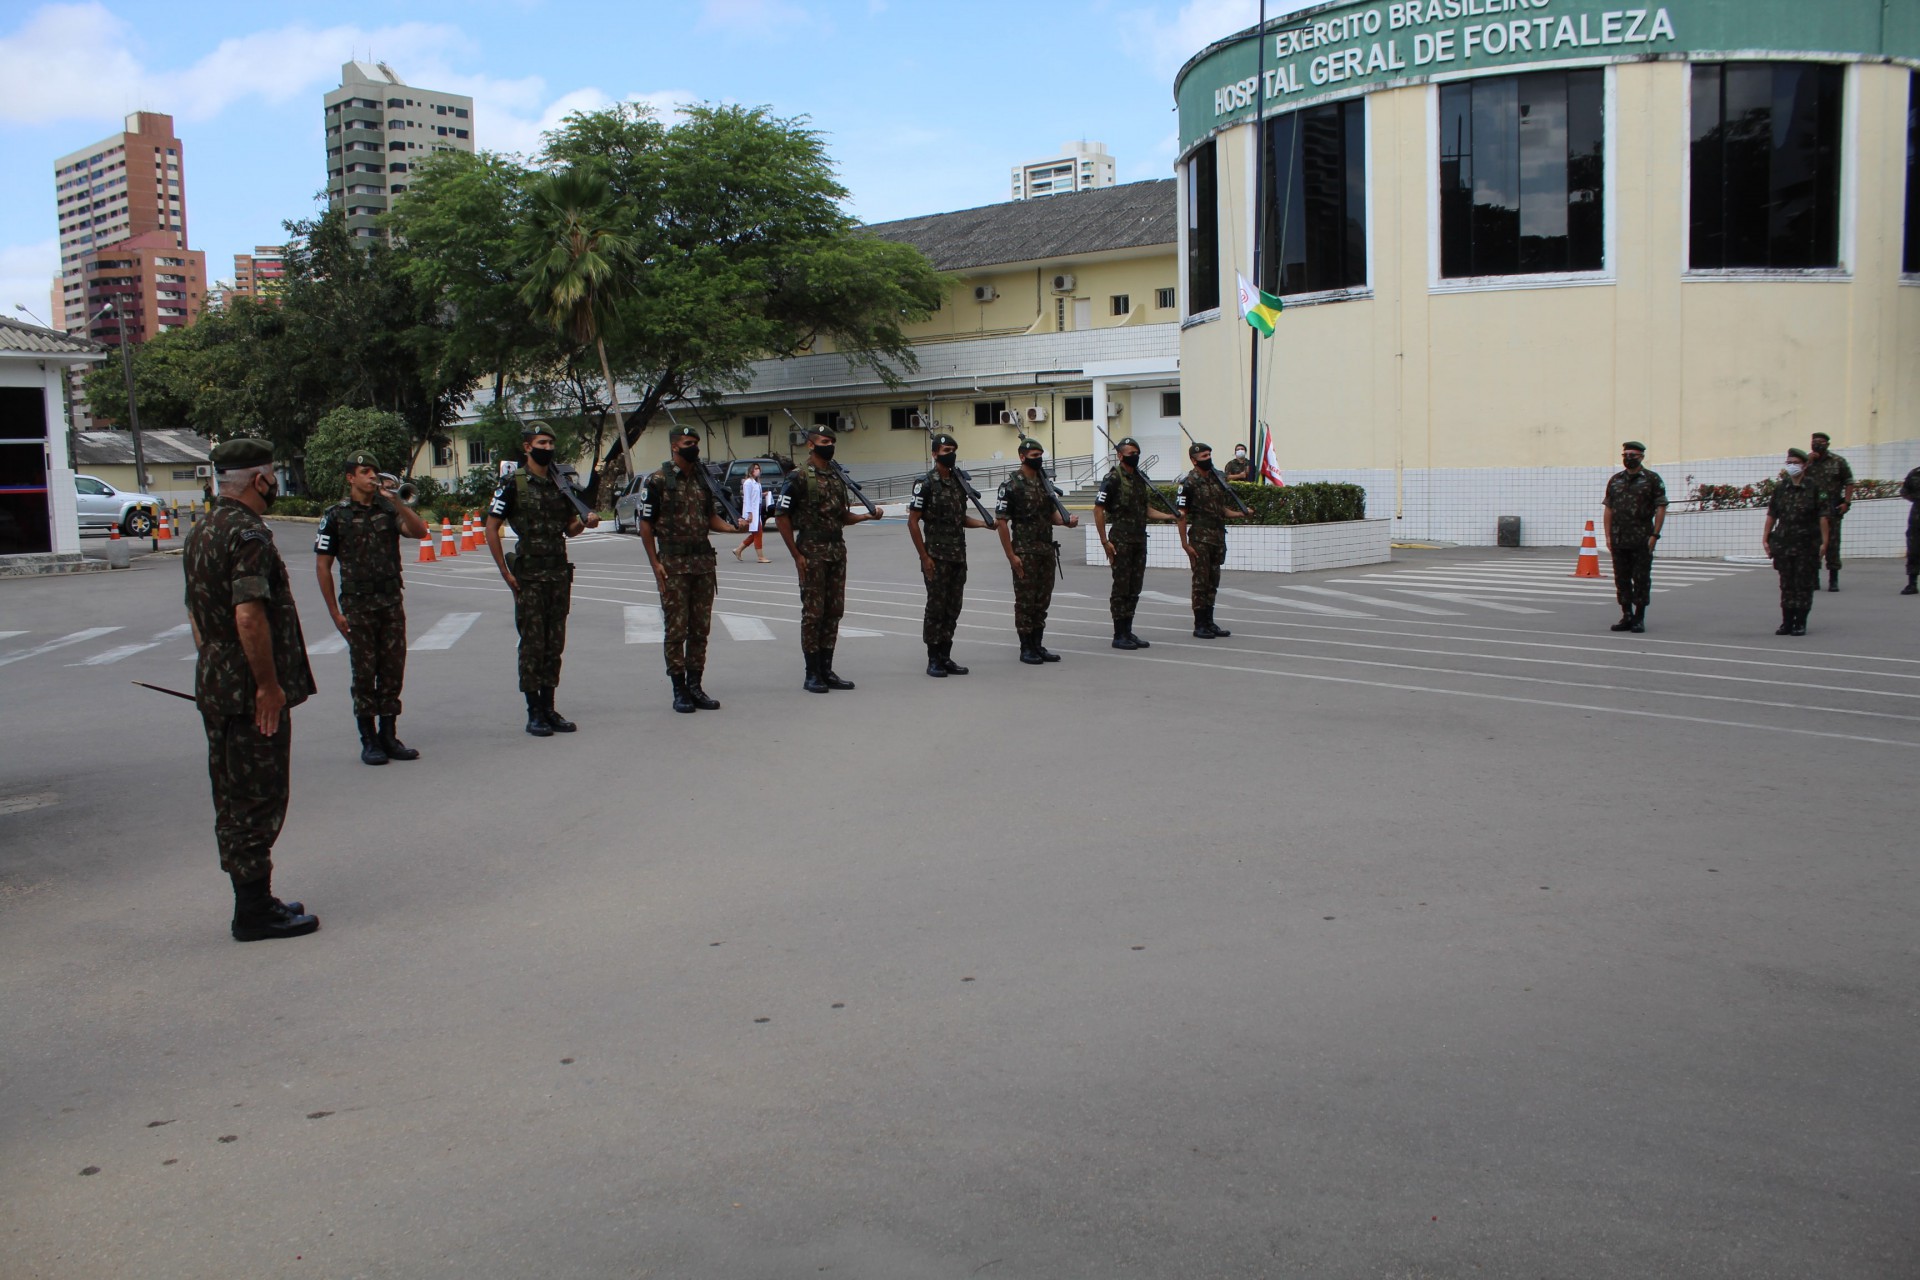 Hospital Geral de Fortaleza administrado pelo Exército, na avenida Desembargador Moreira, em frente à Praça das Flores (Foto: EXÉRCITO BRASILEIRO)